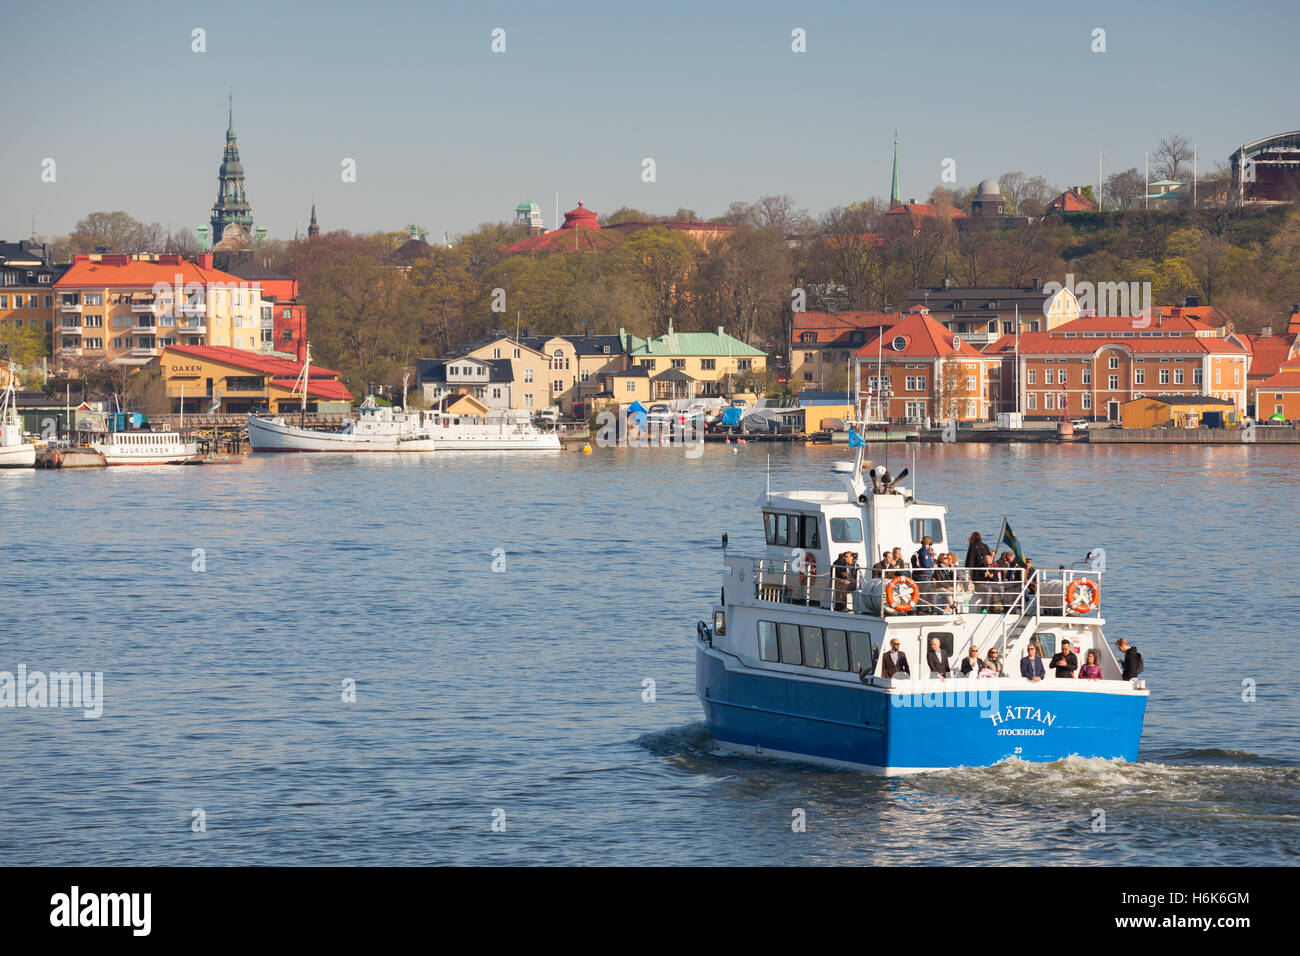 Estocolmo, Suecia - Mayo 4, 2016: el pequeño ferry de pasajeros Hattan azul con personas comunes a bordo, transporte público regular Foto de stock